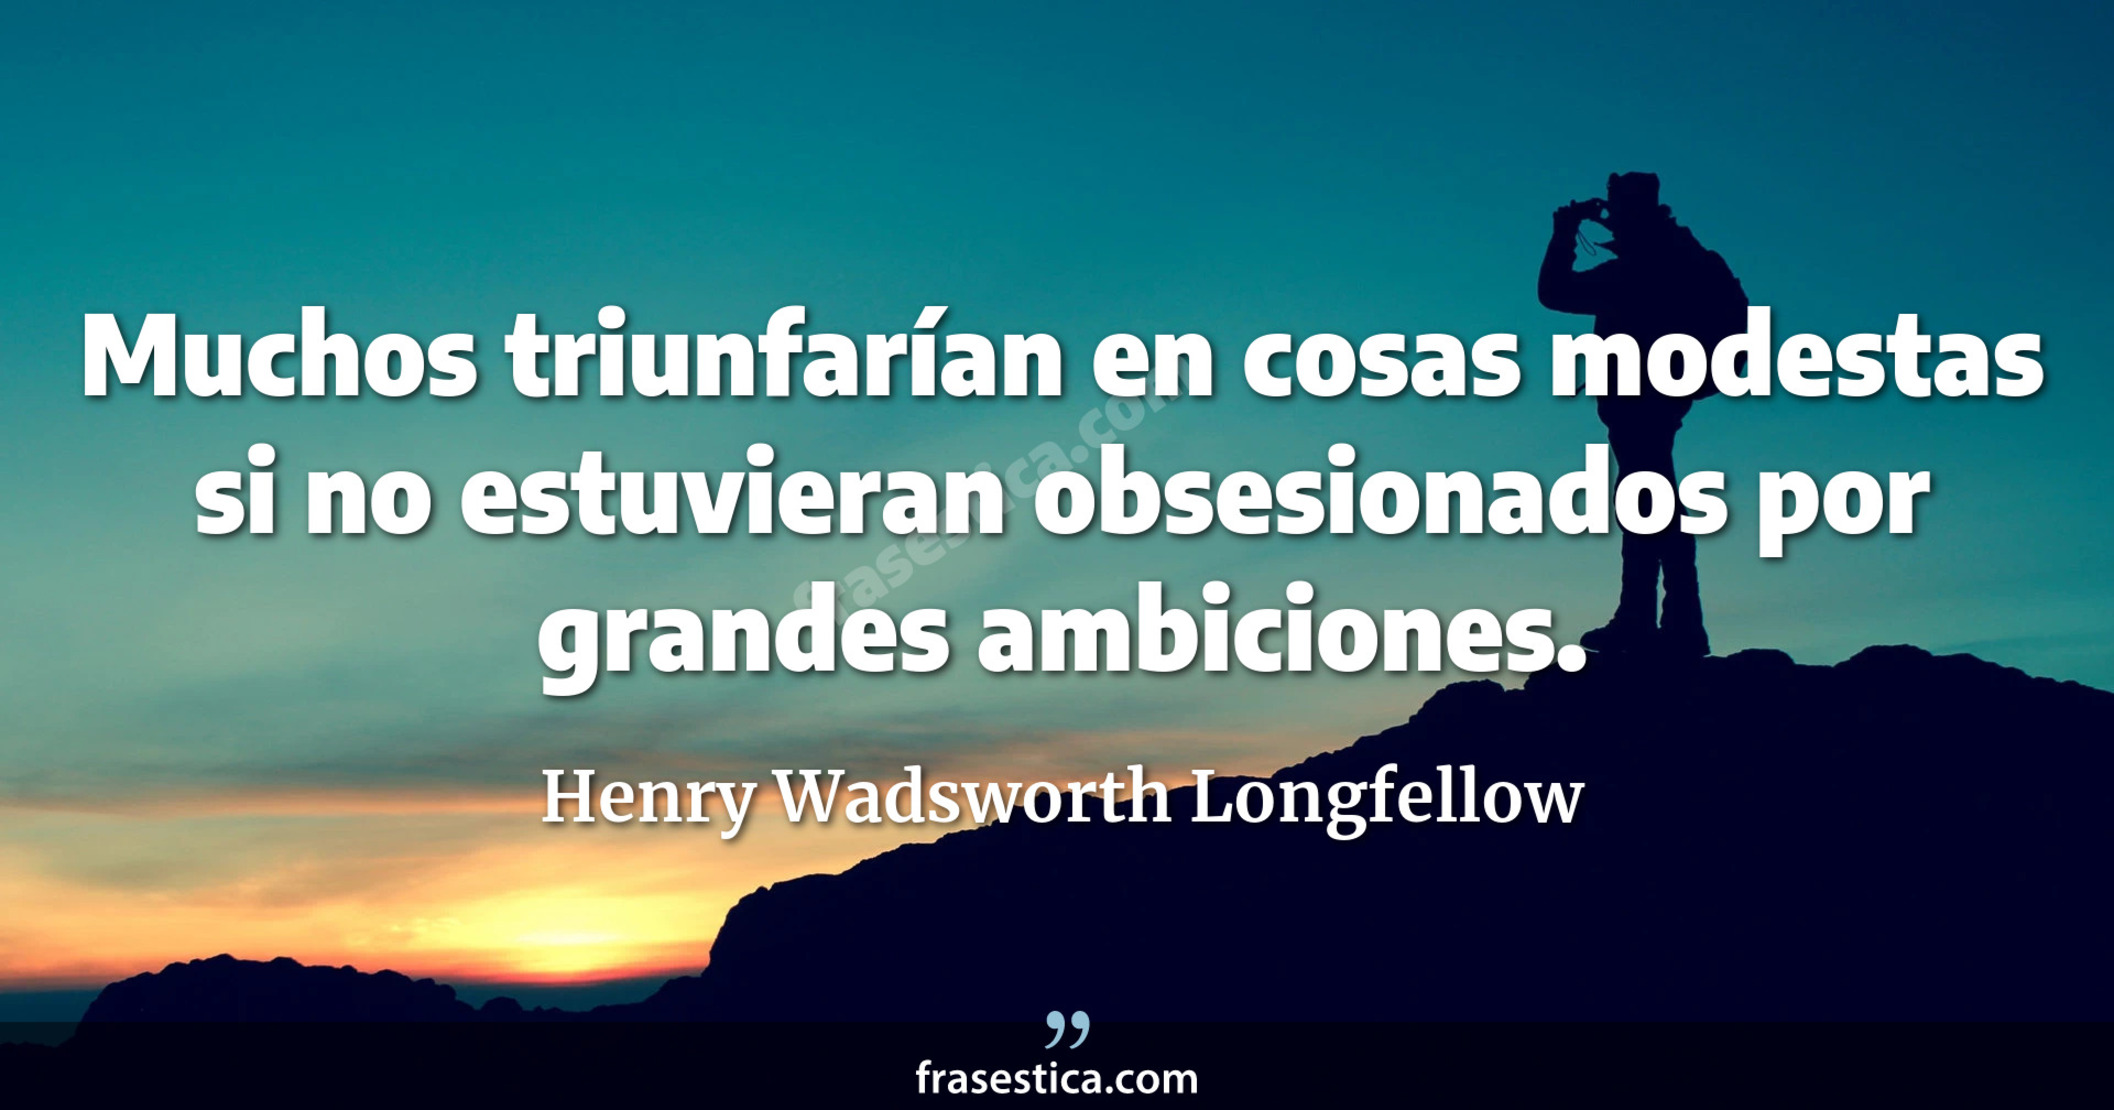 Muchos triunfarían en cosas modestas si no estuvieran obsesionados por grandes ambiciones. - Henry Wadsworth Longfellow